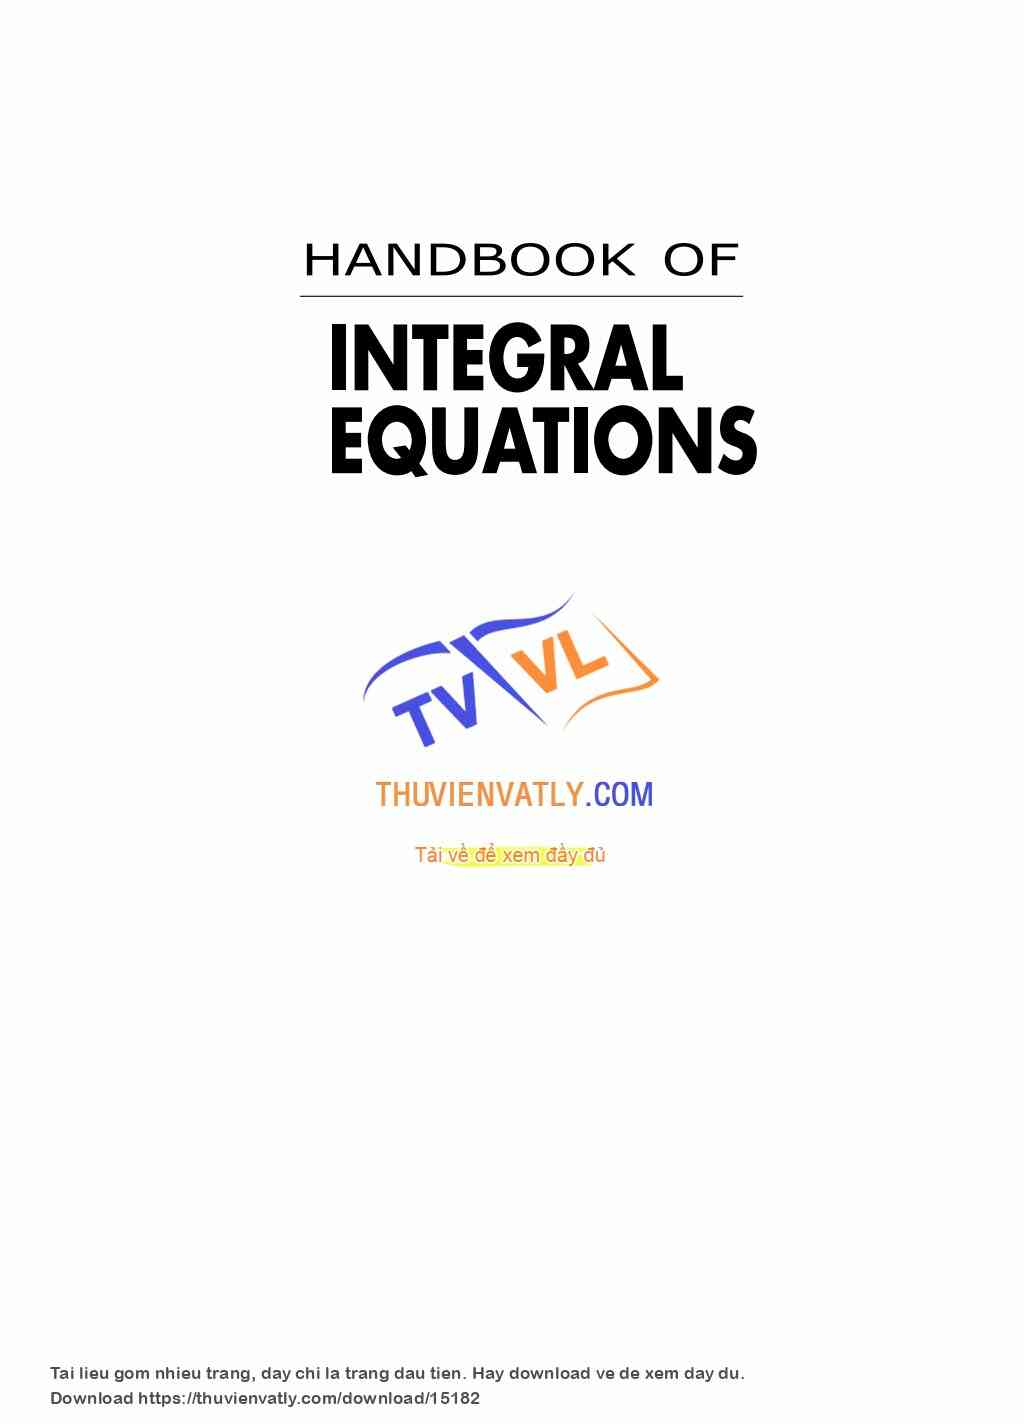 Handbook Of Integral Equations (Andrei D. Polyanin & Alexander V. Manzhirov, CRC Press, 1998)